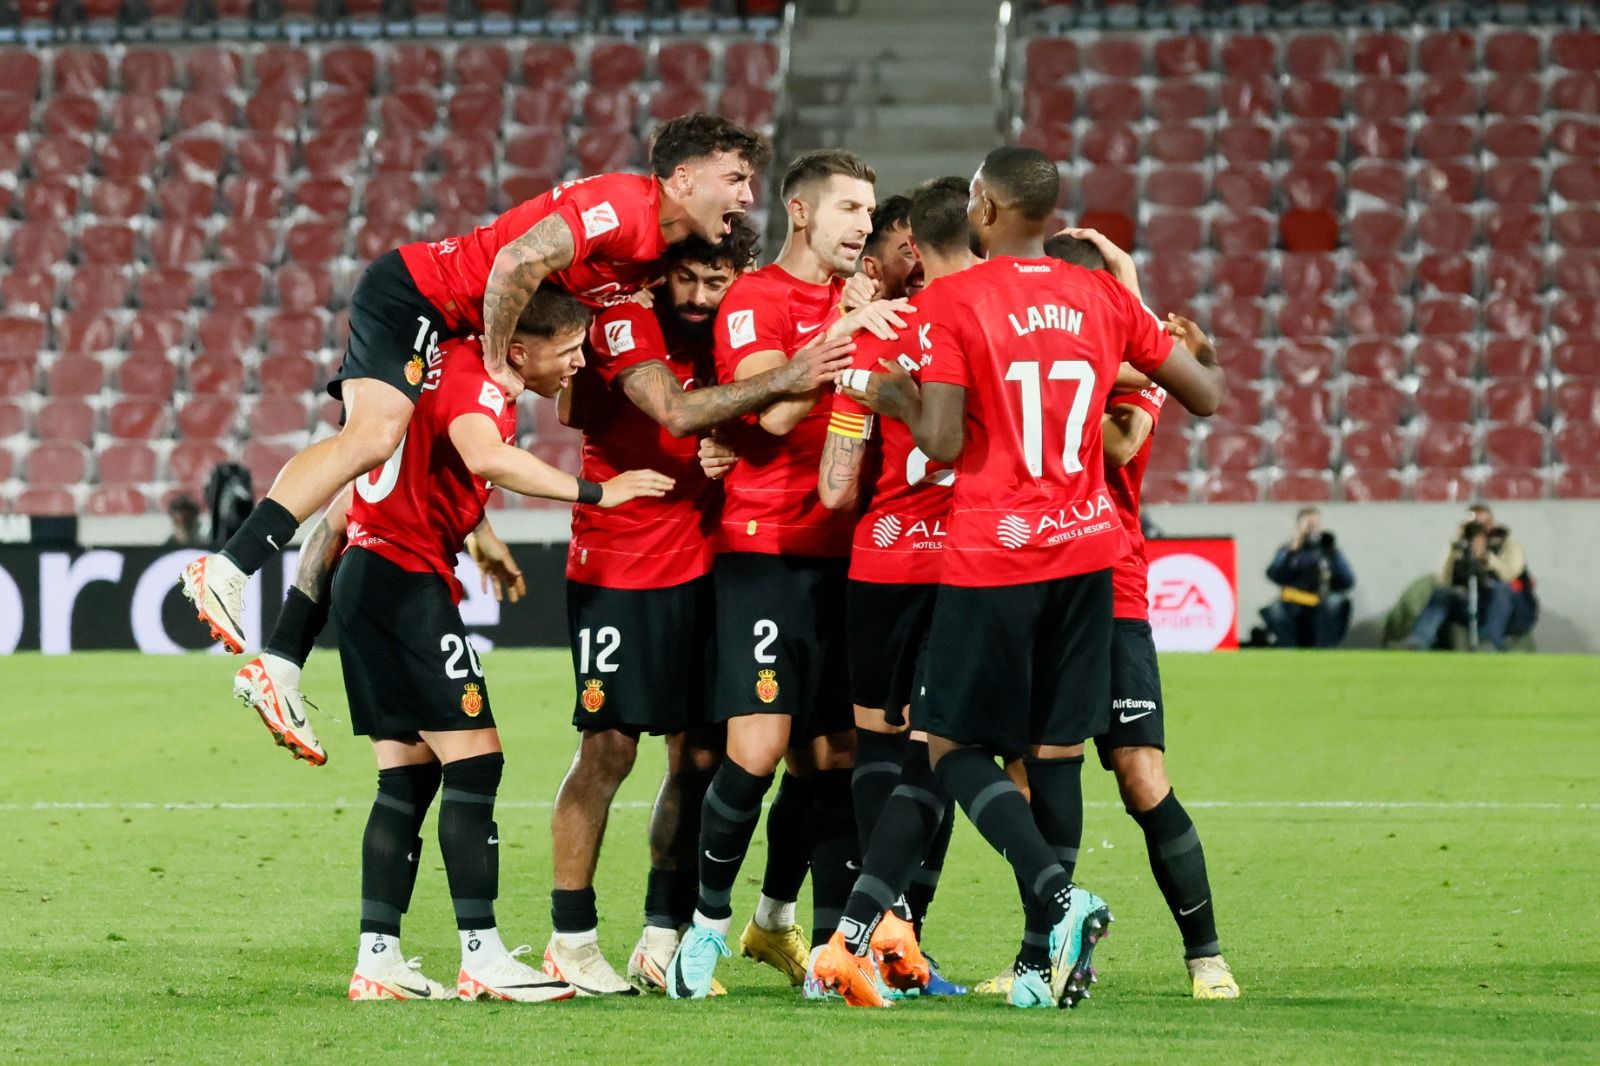 RCD Mallorca- Osasuna: Las mejores fotos de la gran victoria del Real Mallorca